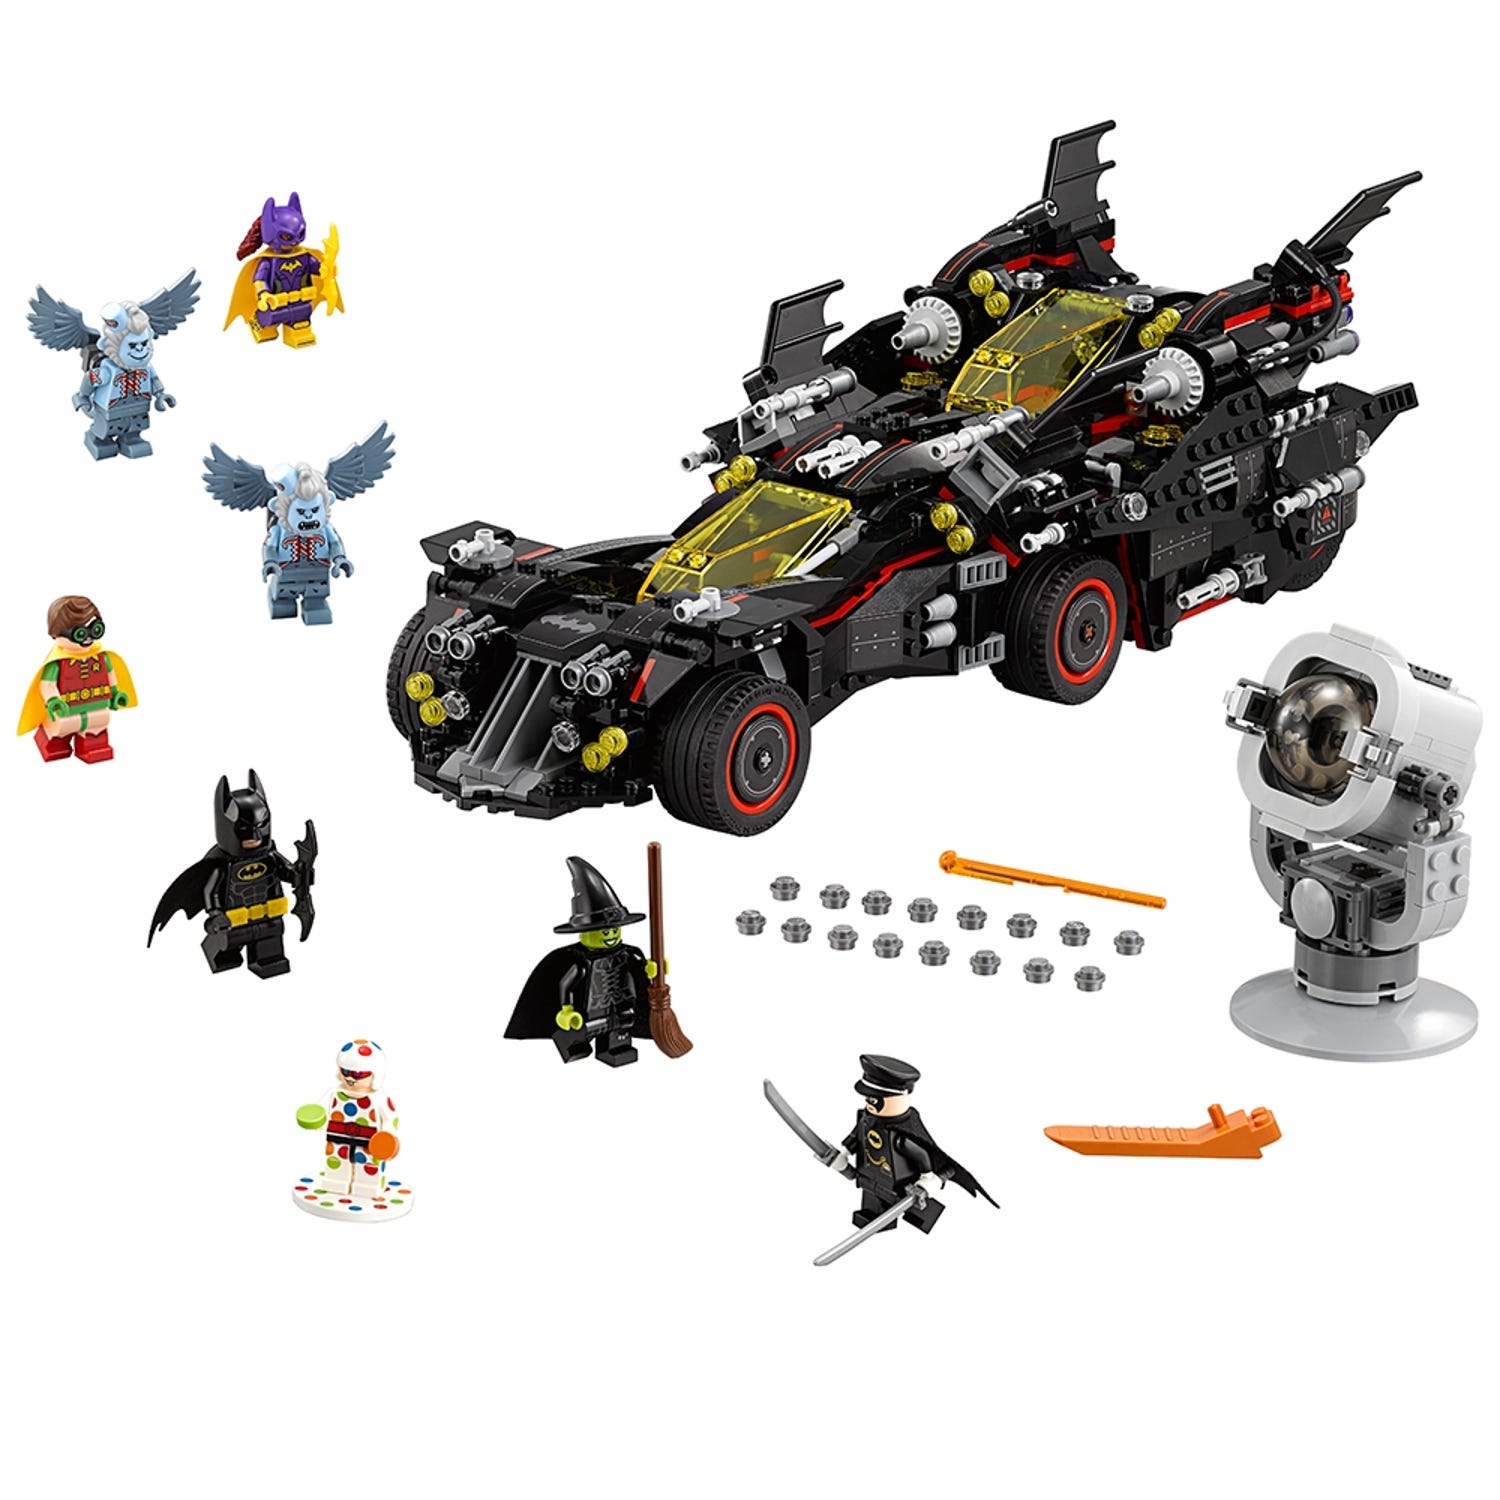 LEGO THE BATMAN – Batmobile